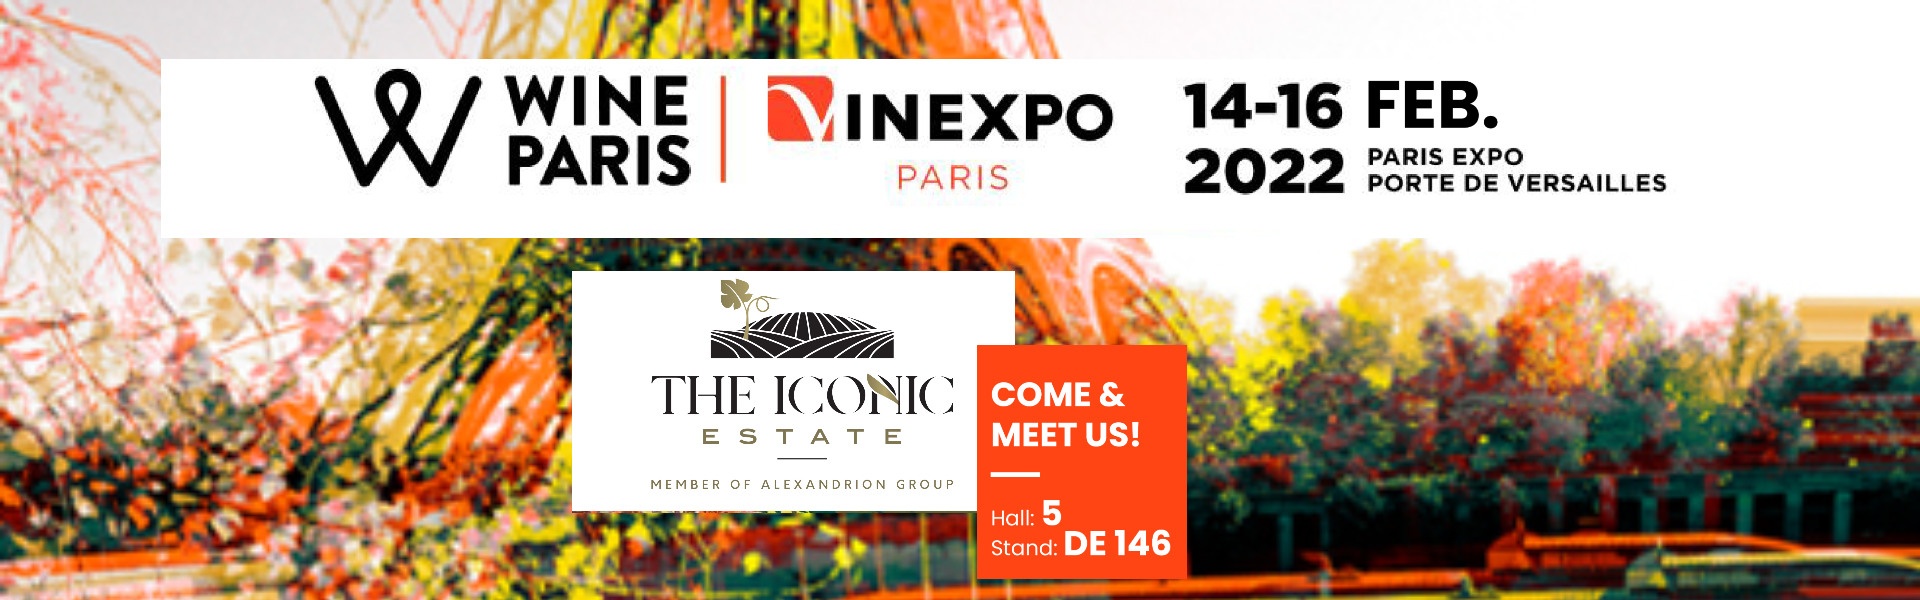 The Iconic Estate at Wine Paris Vinexpo Paris 2022